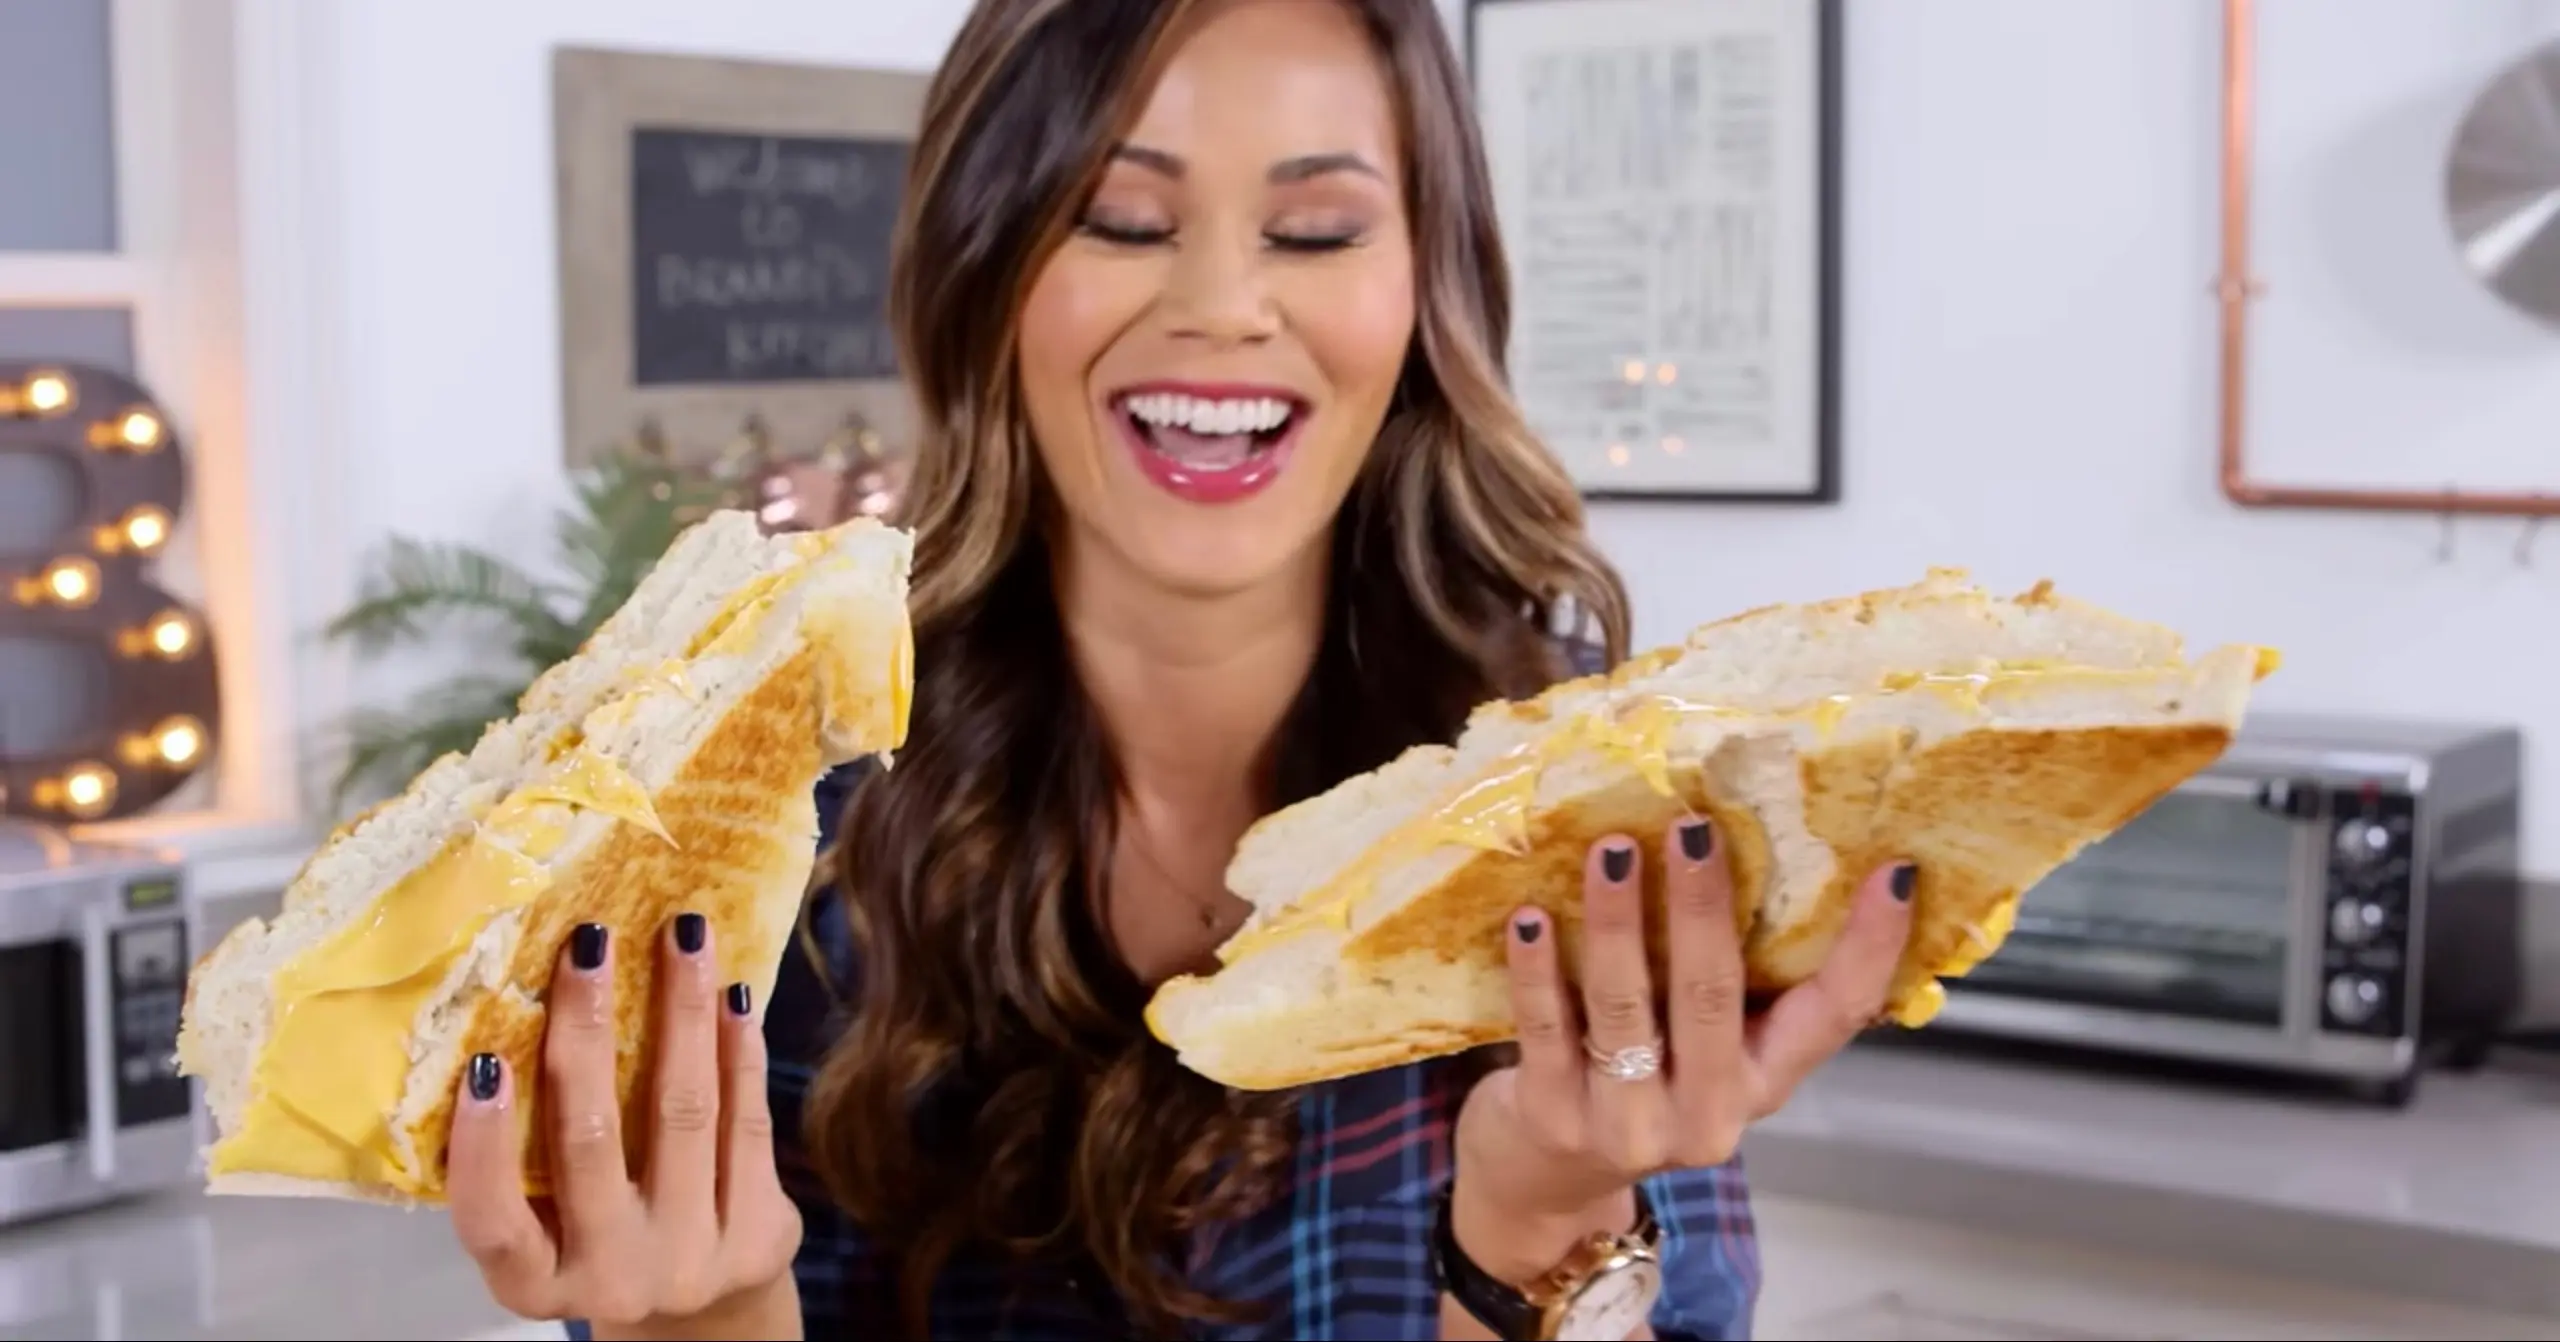 Vidéo : comment préparer un sandwich grilled cheese géant ?